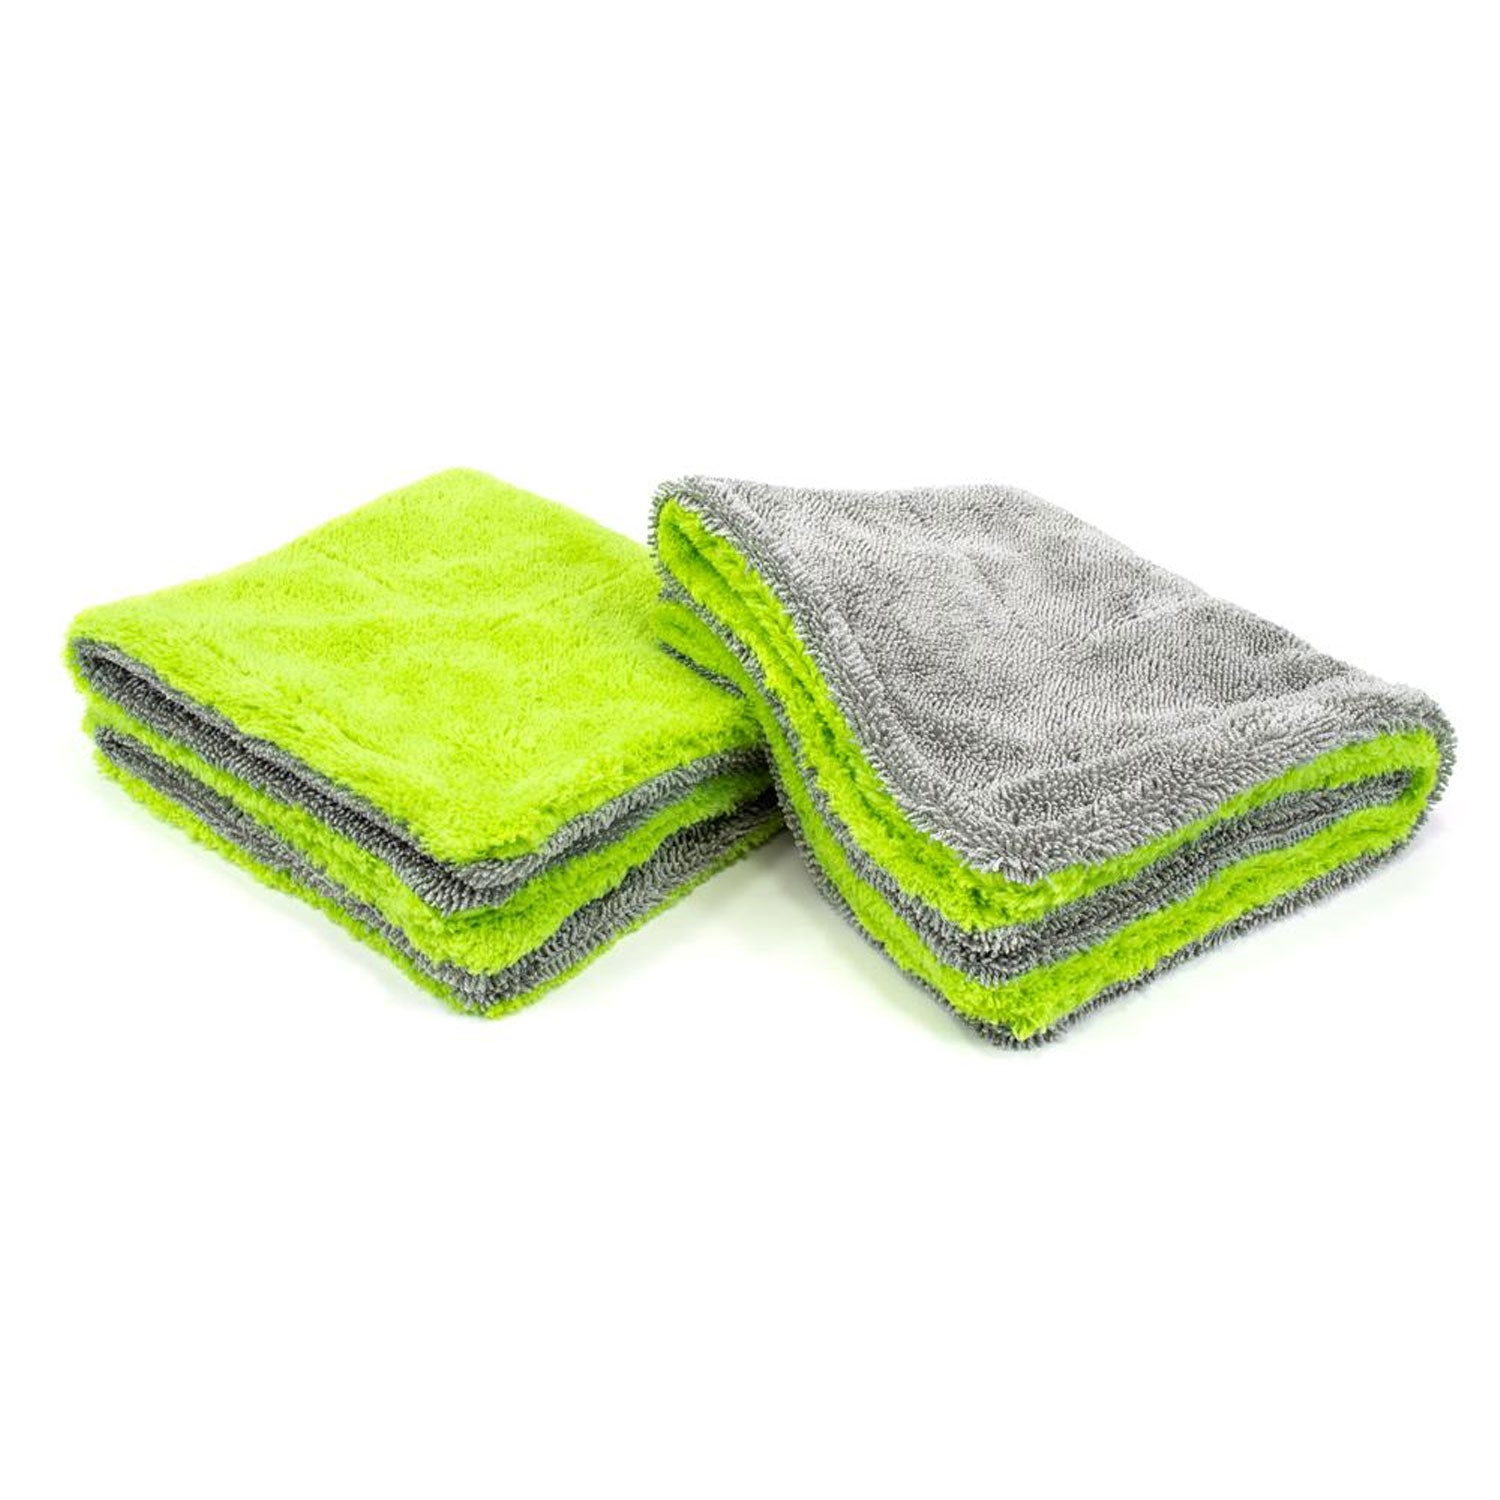 amphibian-plush-drying-towels-2-pack